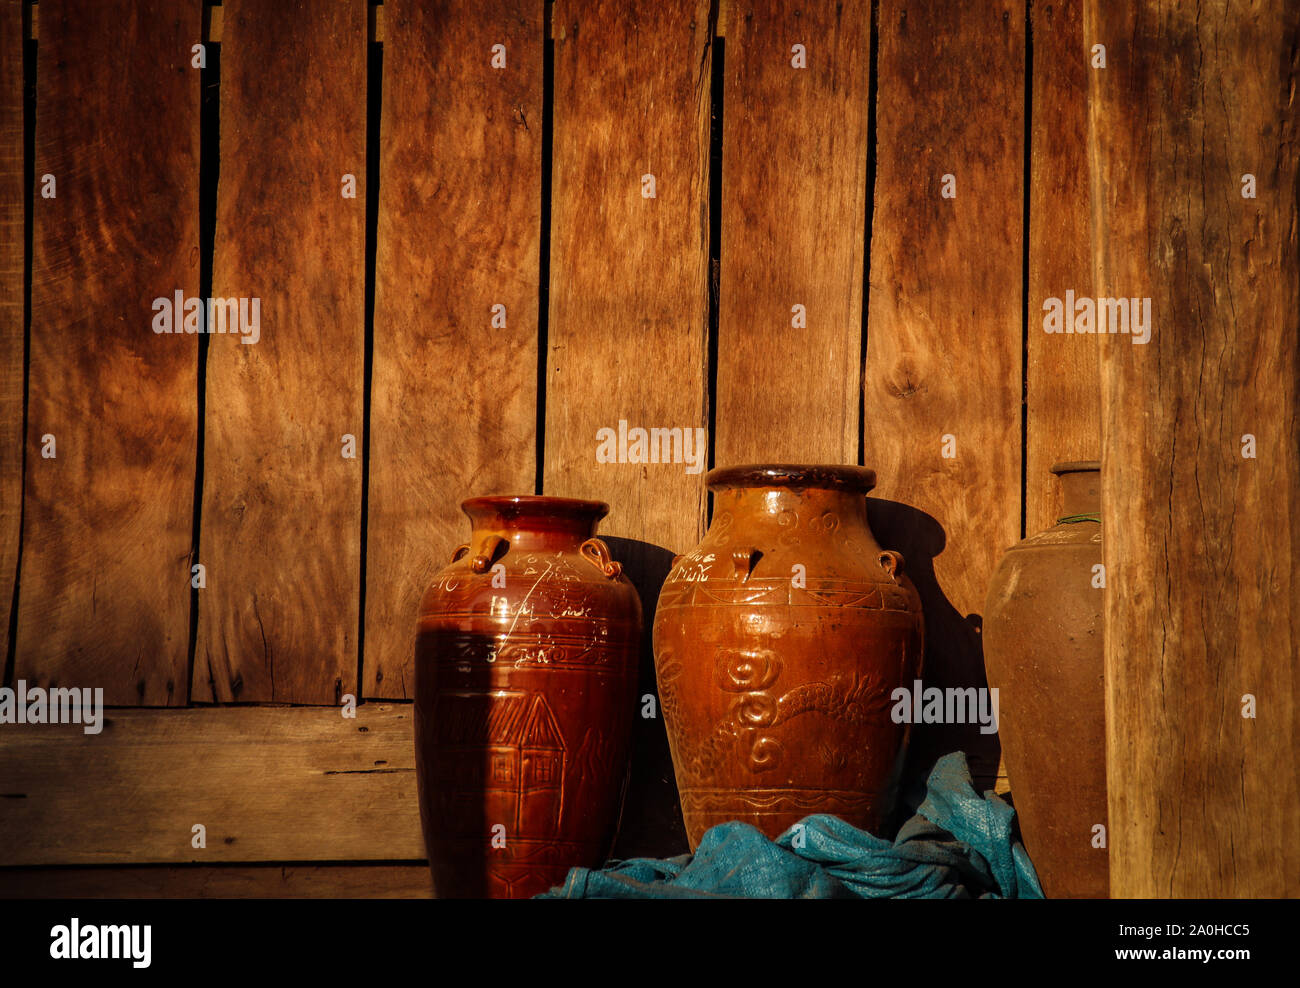 Los tarros de barro que tradicionalmente utilizan los hmong como contenedores para conservar la comida, muestran la vida y la cultura de la aldea en Lien son Vietnam Foto de stock